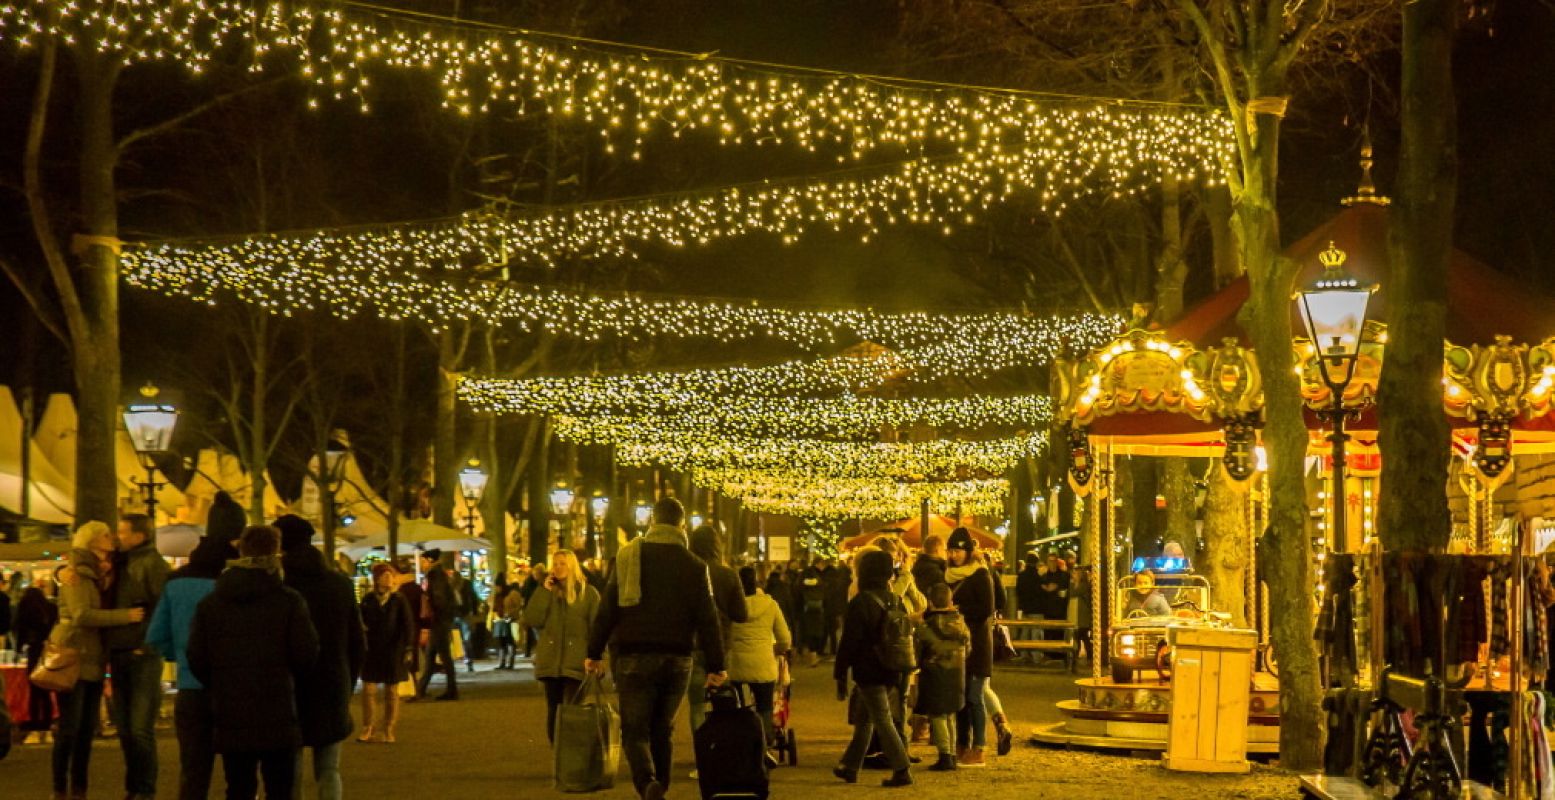 Loop onder duizenden lichtjes op de Royal Christmas Fair in Den Haag. Foto: © Anne de Rijk Fotografie.